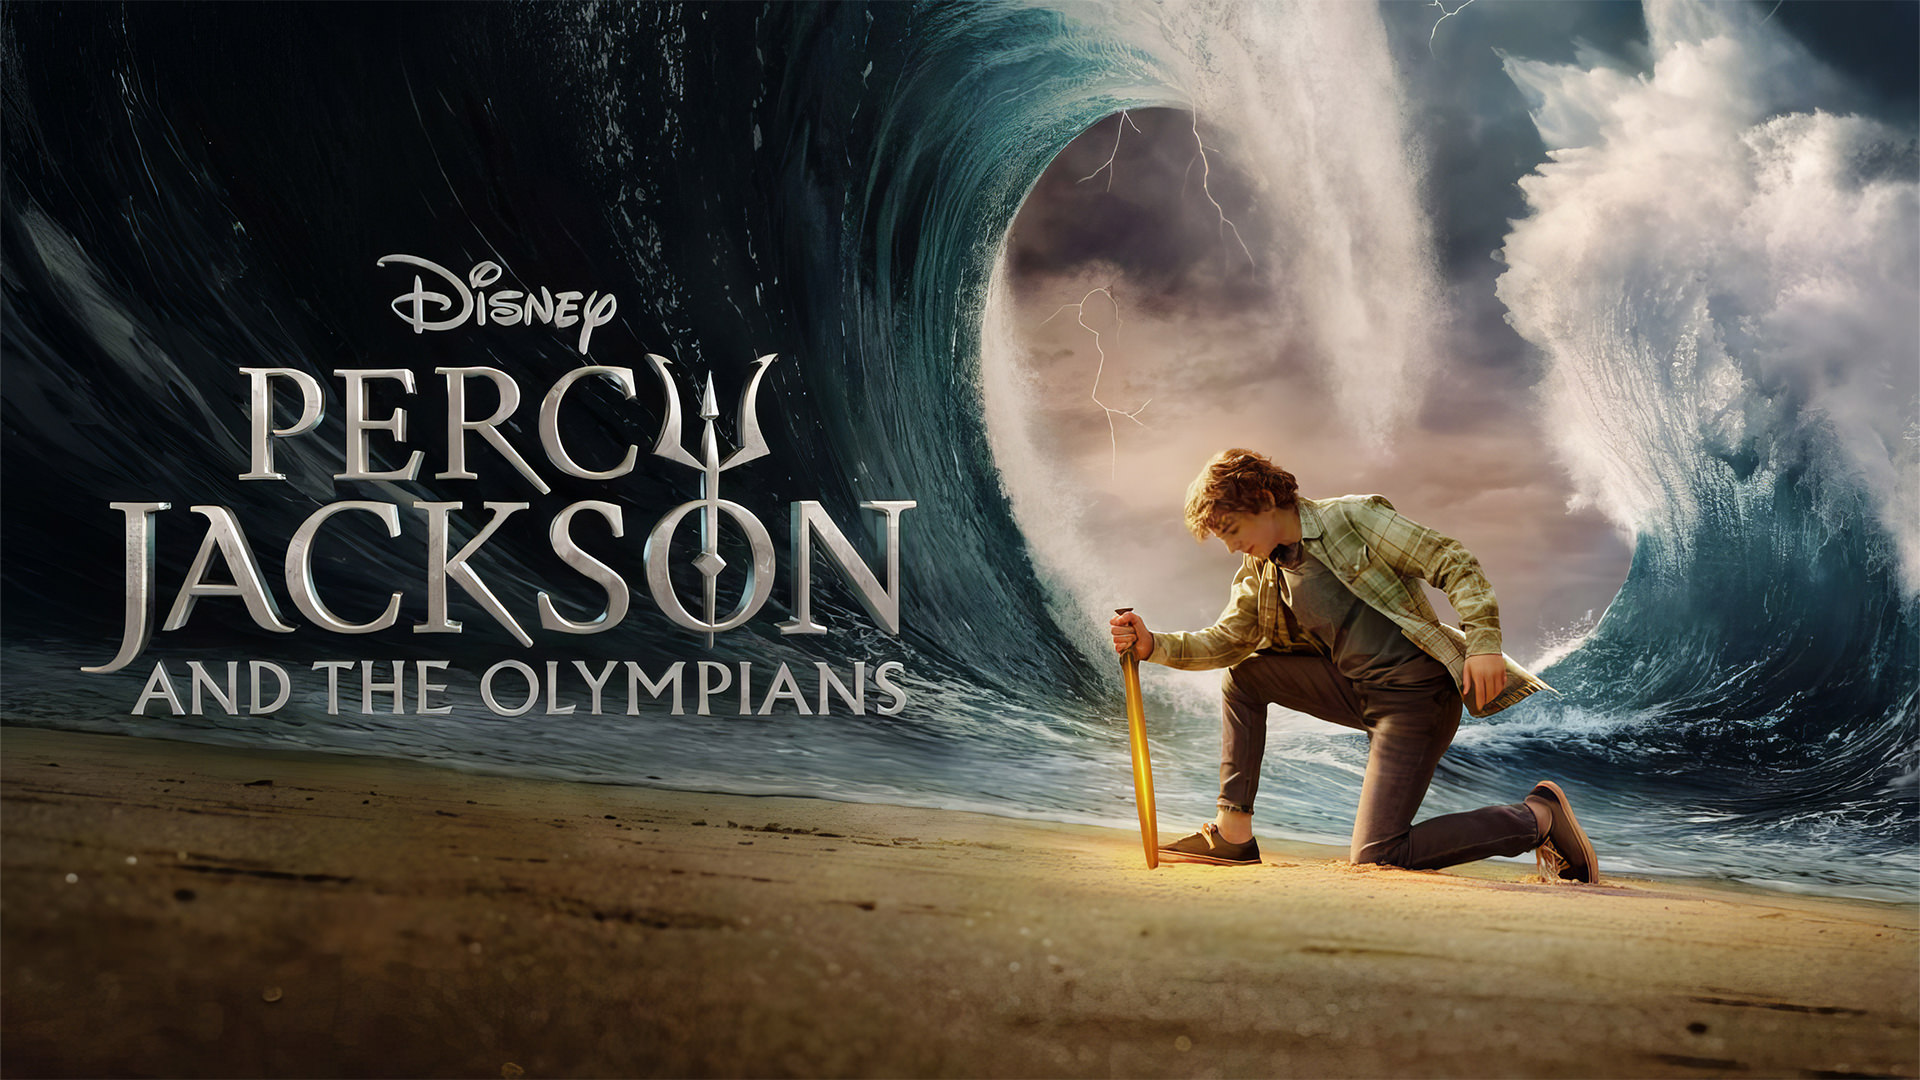 شروع ماجراجویی پرسی جکسون در سریال Percy Jackson and the Olympians 